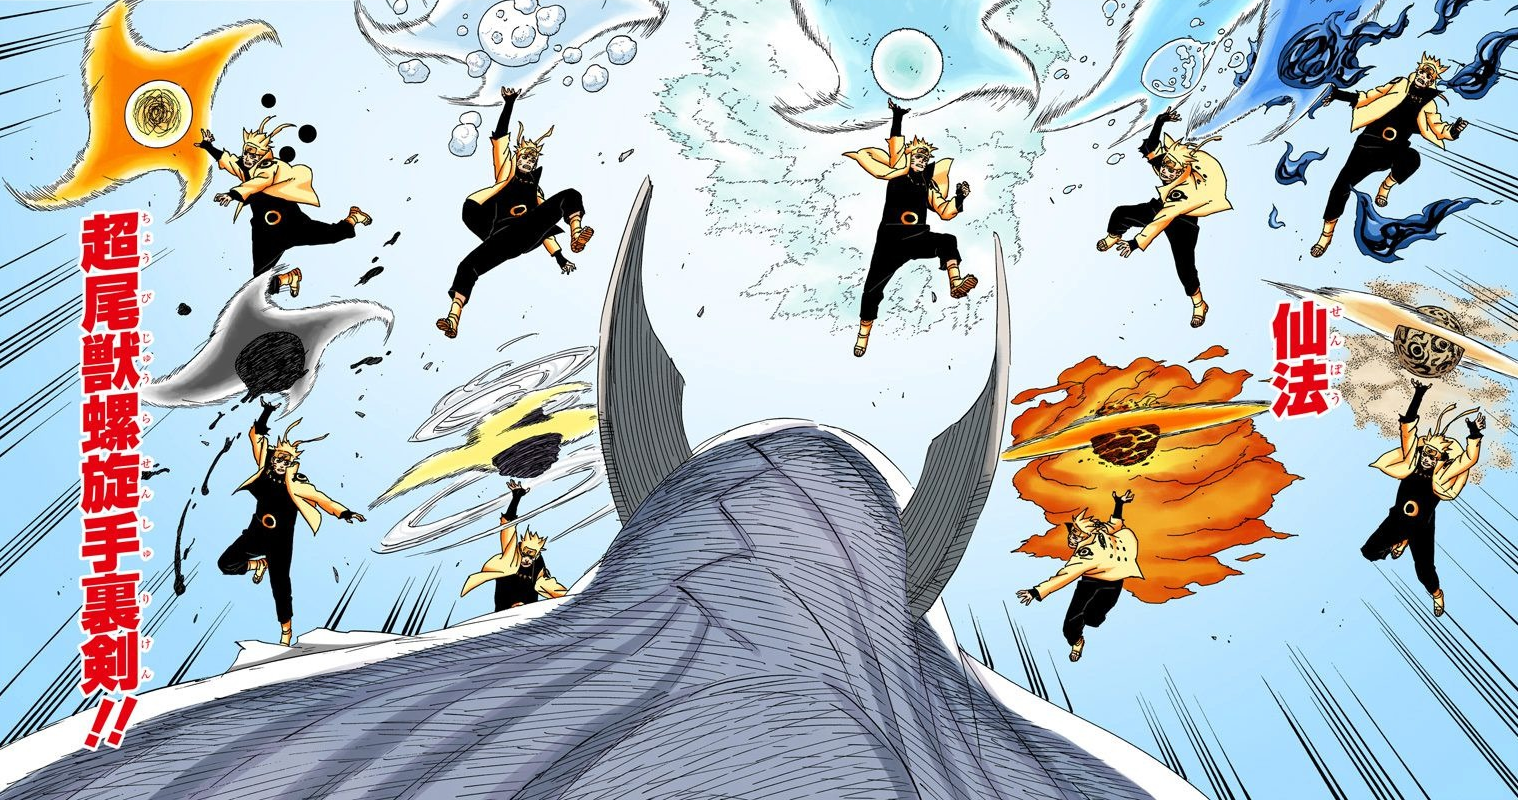 Phiên bản Rasengan
Phiên bản mới của Naruto năm 2024 đã ra mắt với Rasengan mới - một kỹ thuật công phu và khắc chế, sẽ khiến cho những fan vô cùng thích thú. Hãy cùng theo dõi hành trình của Naruto và thử sức với những trận chiến độc đáo với phiên bản Rasengan mới nhất.